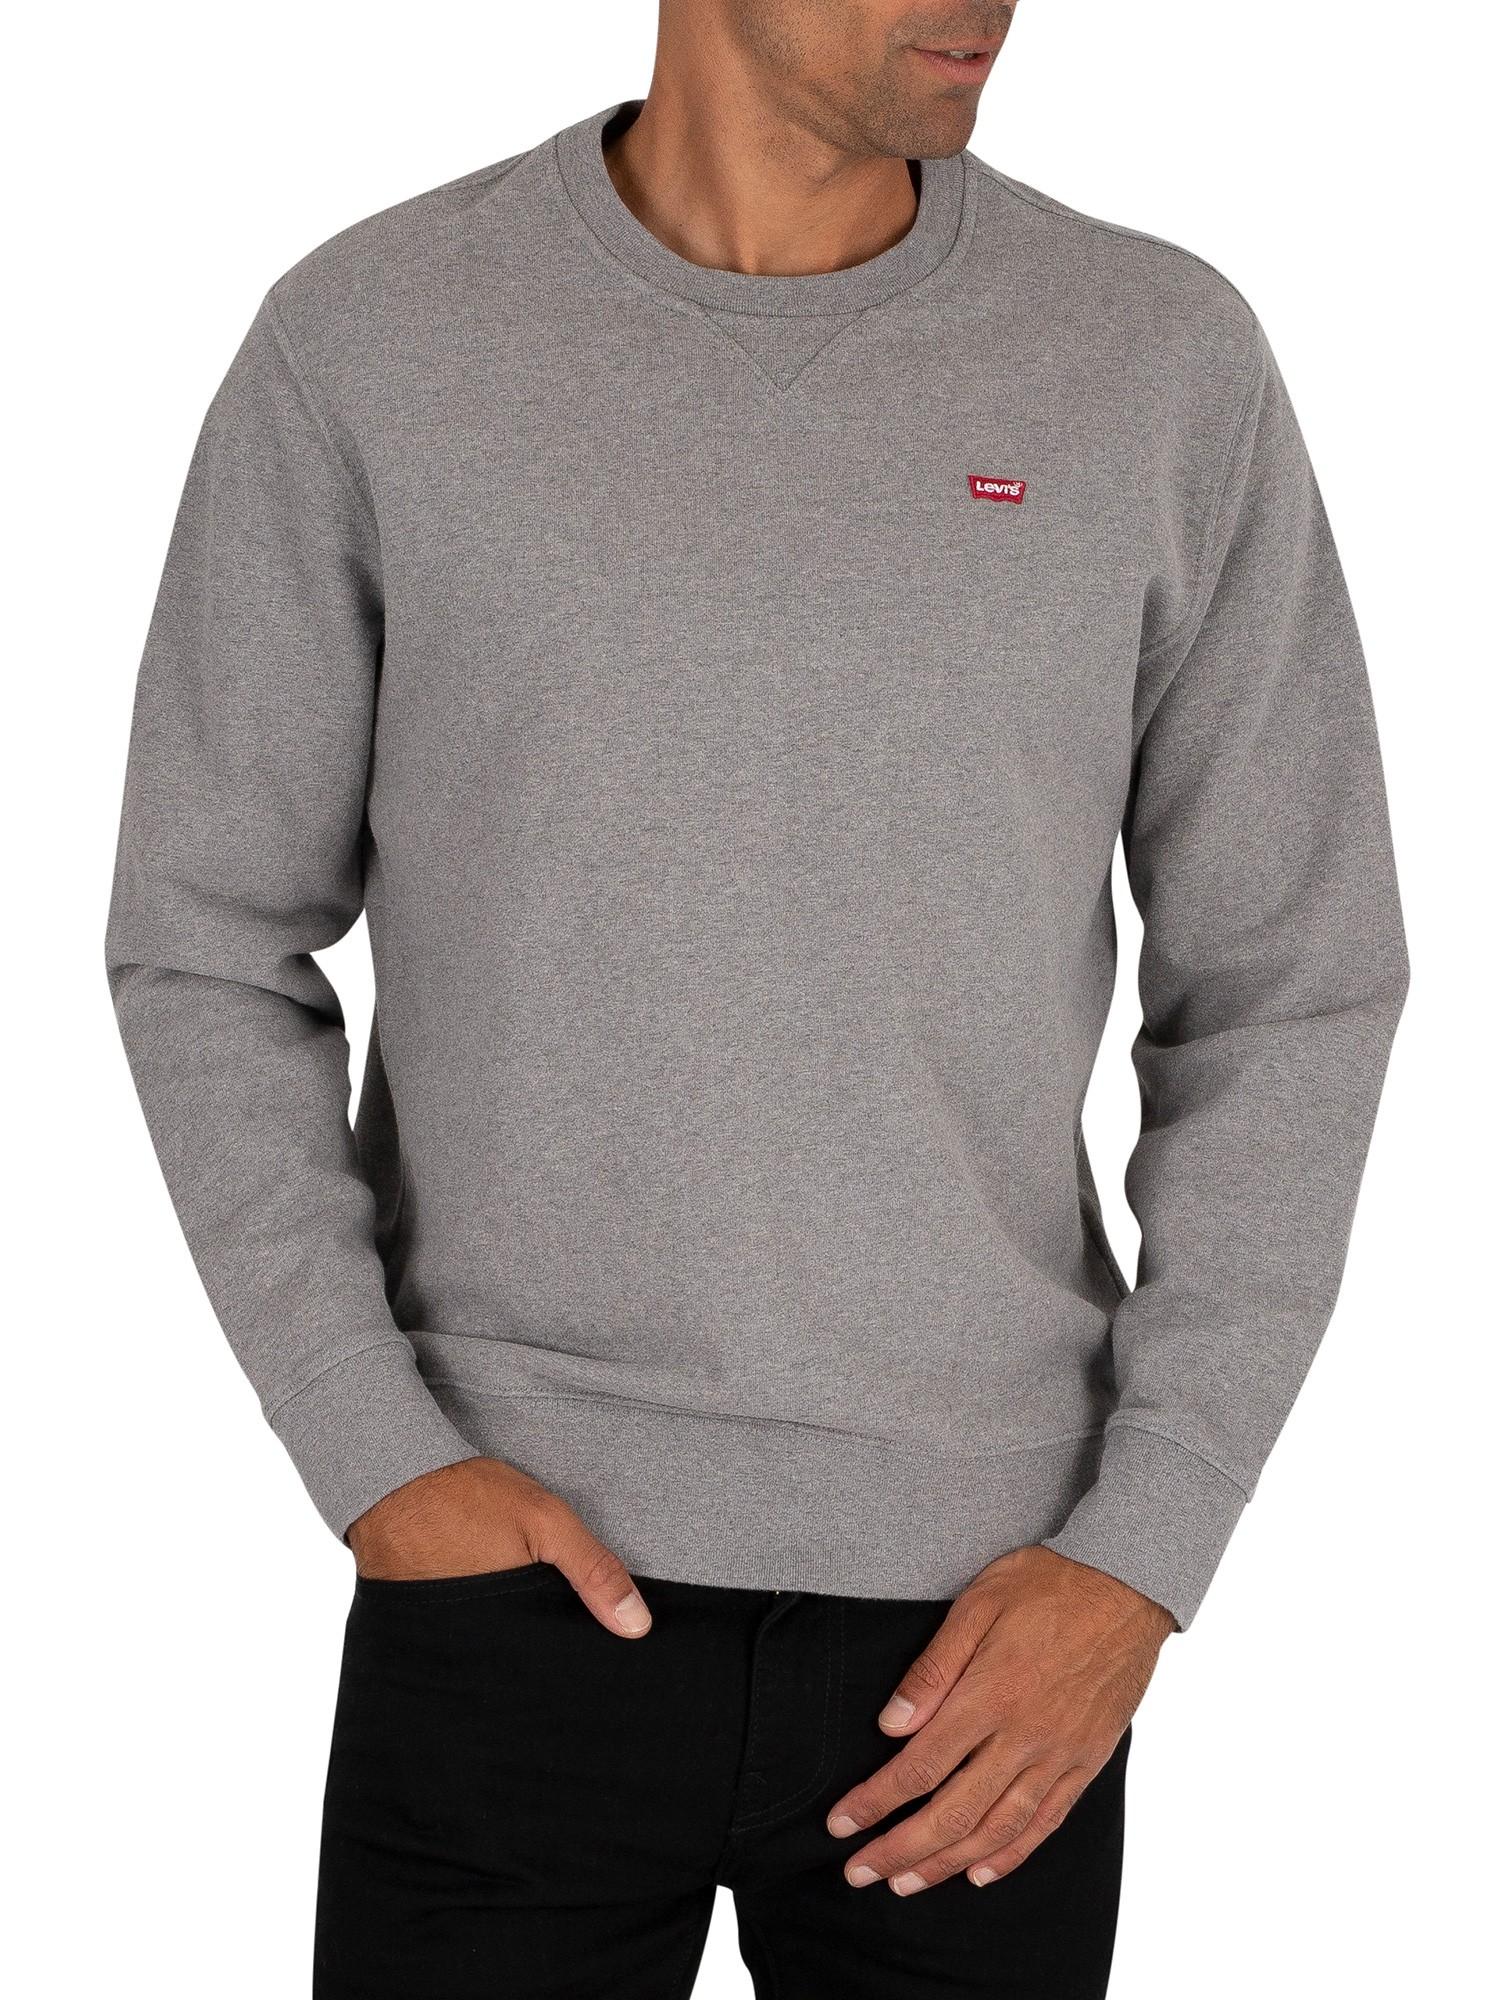 Levi's Original Crew Sweatshirt in Grey Heather (Gray) for Men - Lyst